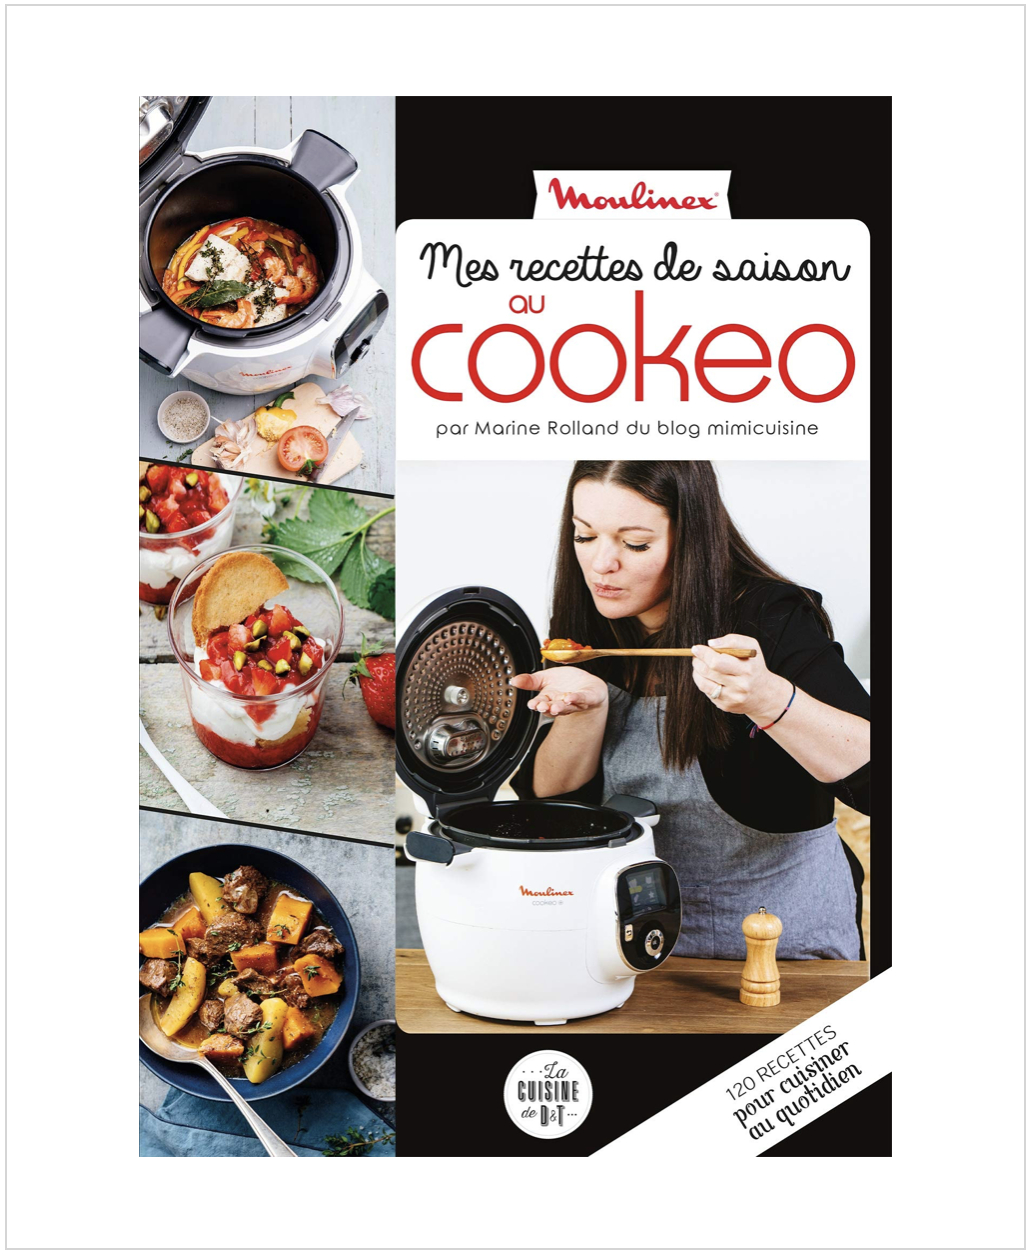 Cookeo / Recettes Cookeo / Recette Cookeo - Mimi Cuisine concernant Livre Recette Cookeo Pdf Gratuit